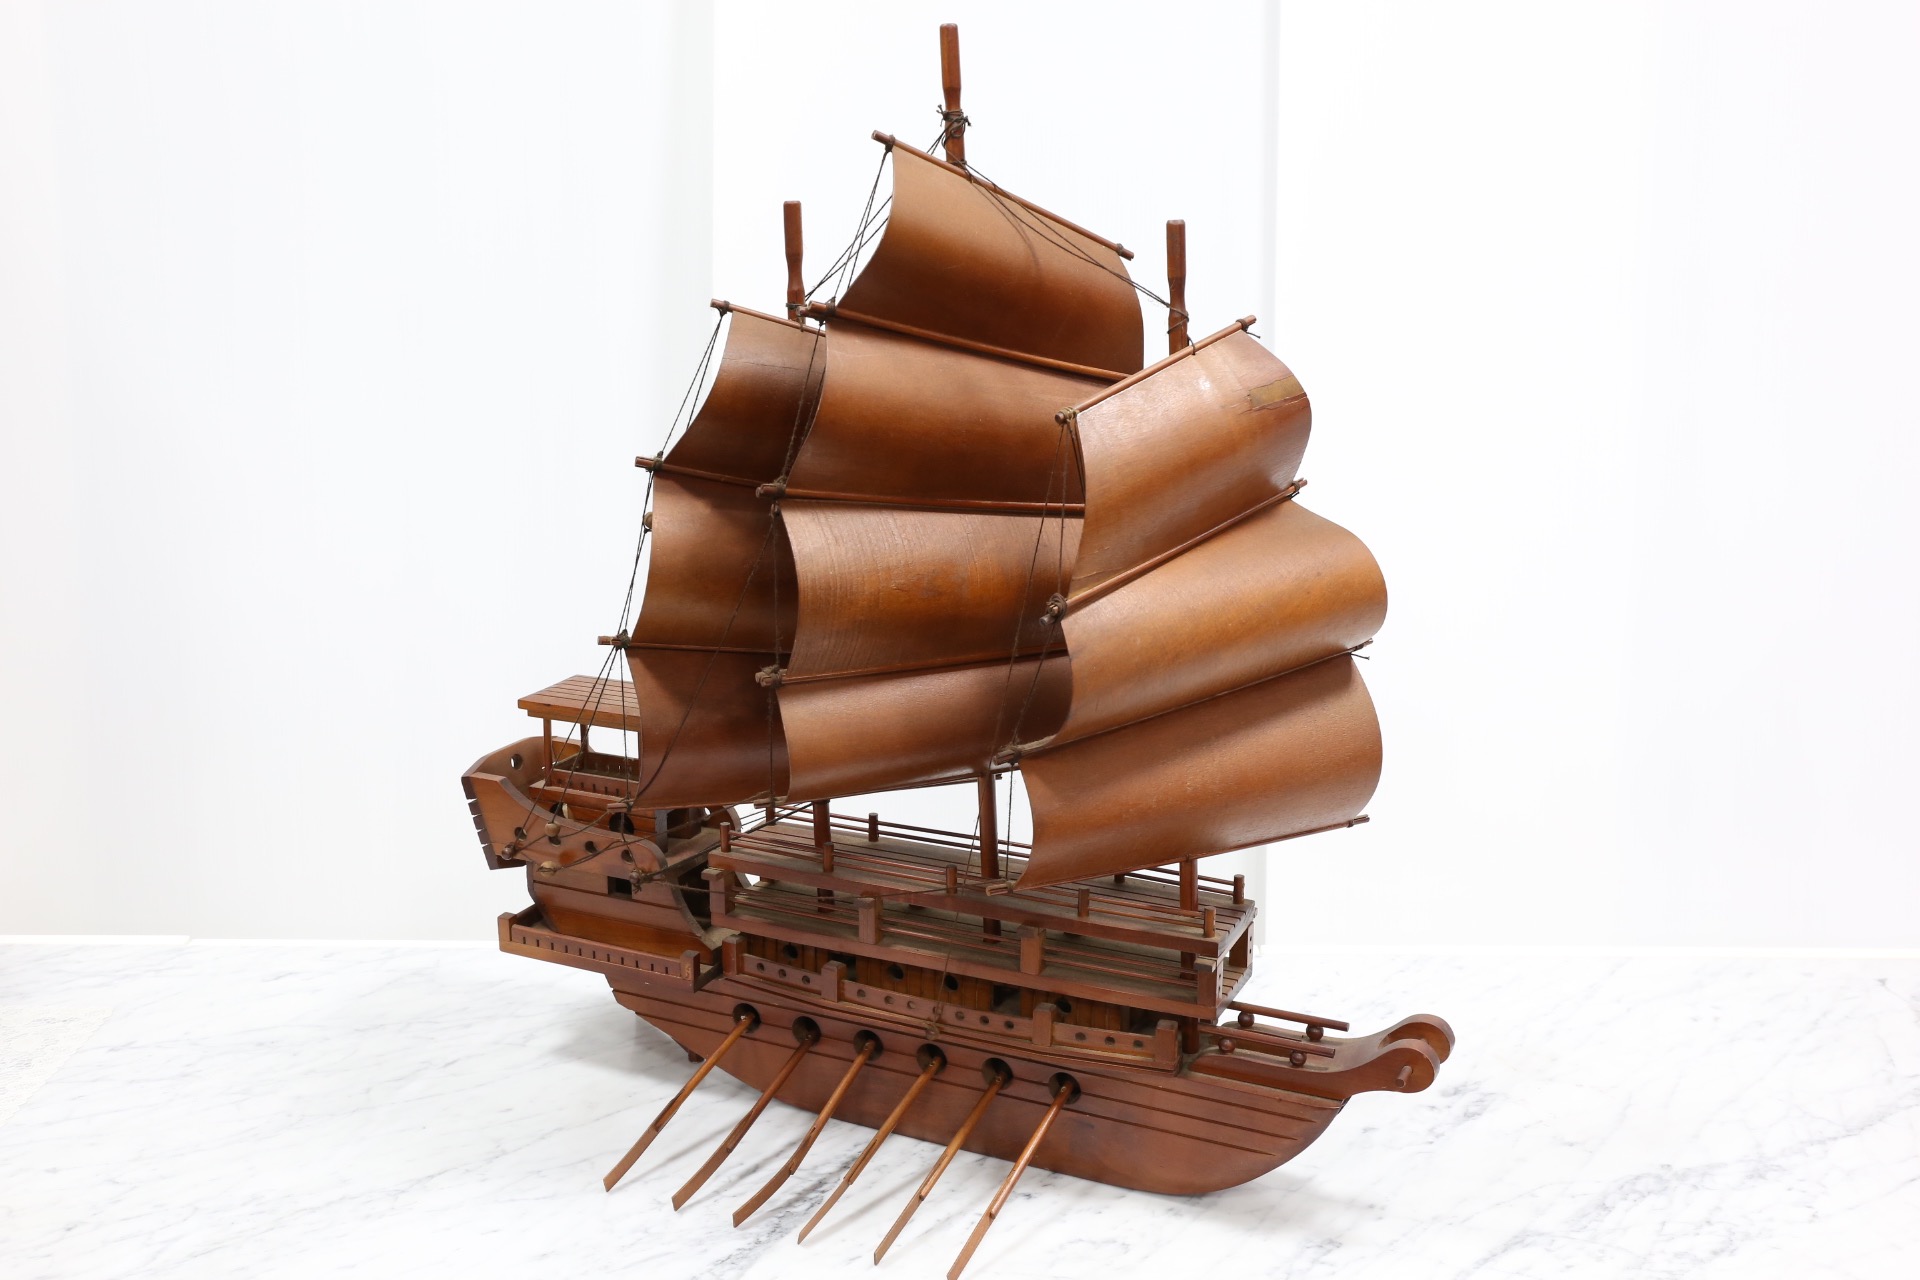 木製の帆船模型 [4K-1448]4